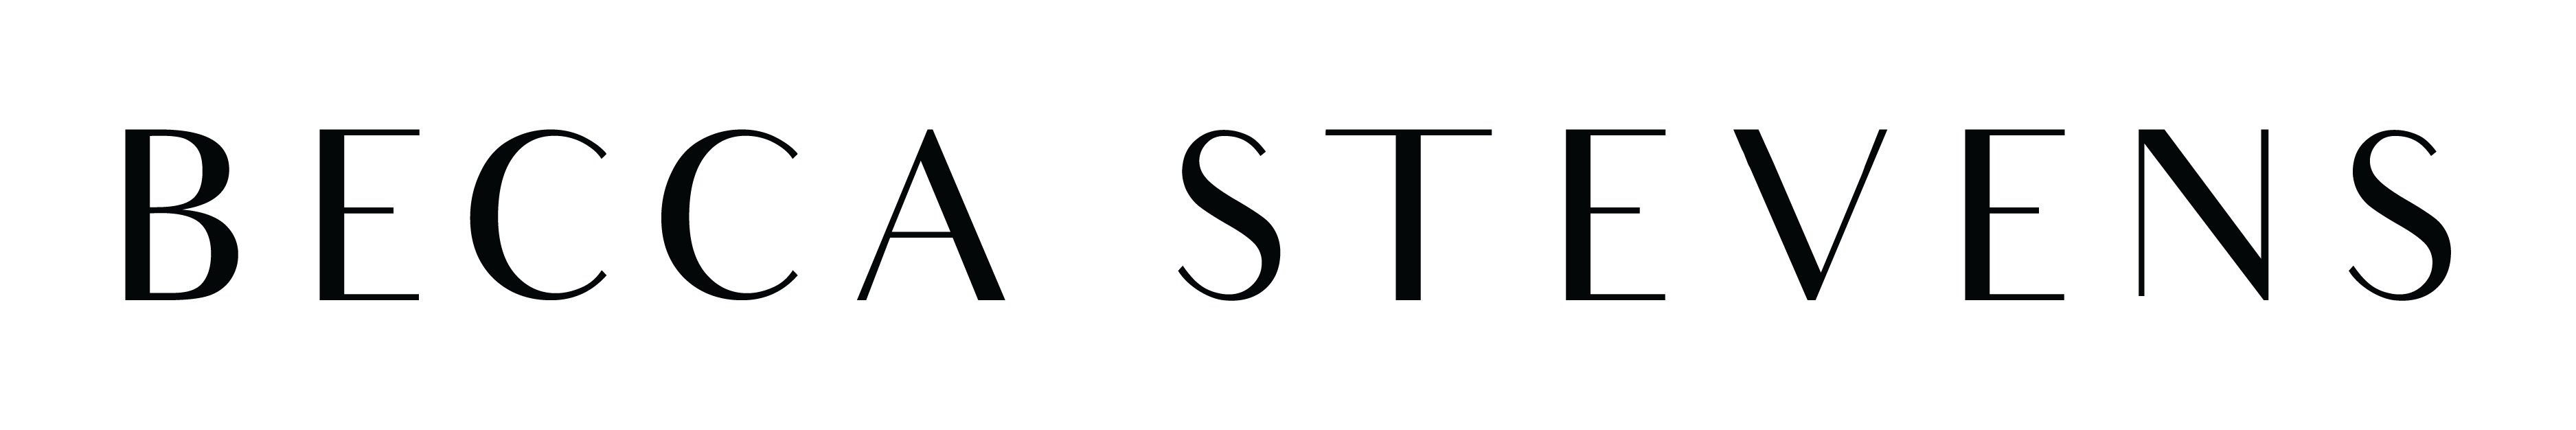 Becca Stevens logo